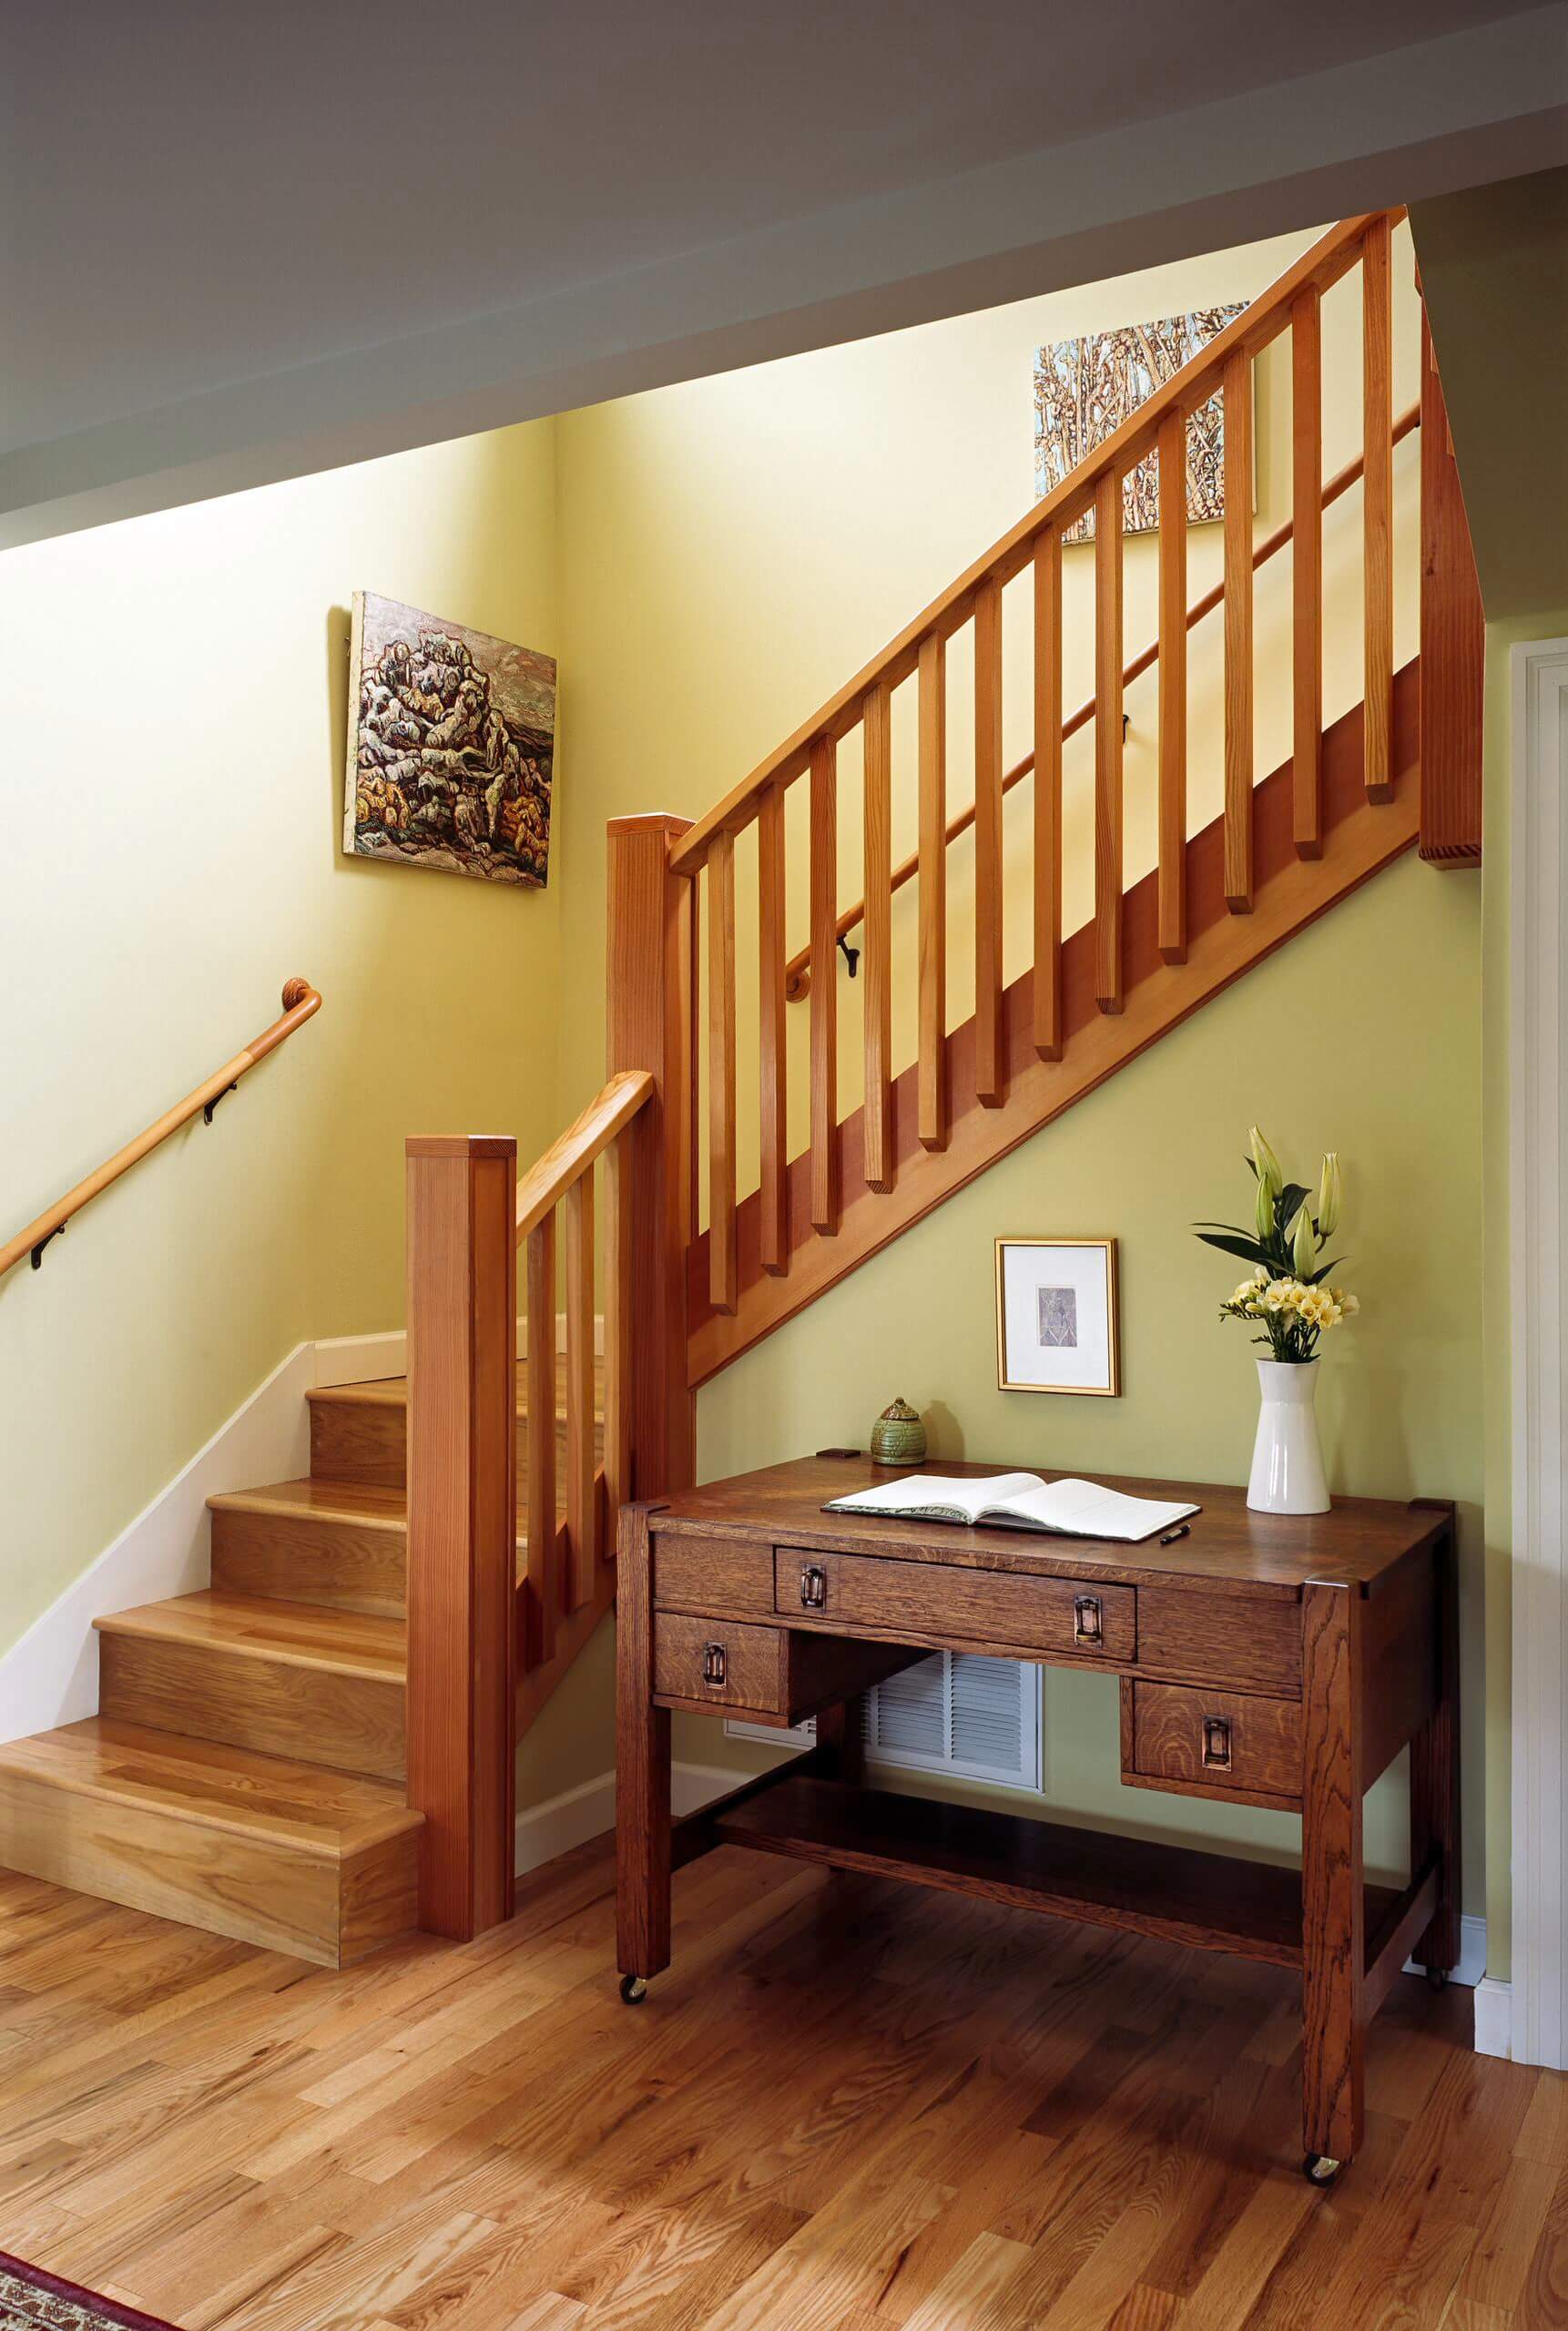 Cầu thang dễ ứng dụng: Cầu thang dễ ứng dụng là giải pháp hoàn hảo cho những không gian sống nhỏ hẹp. Với kinh nghiệm và tâm huyết, chúng tôi đã tạo ra các mô hình cầu thang đẹp và dễ ứng dụng nhất cho ngôi nhà của bạn. Hãy tham khảo các mẫu cầu thang dễ ứng dụng để tìm kiếm sự lựa chọn phù hợp nhất cho ngôi nhà của mình.